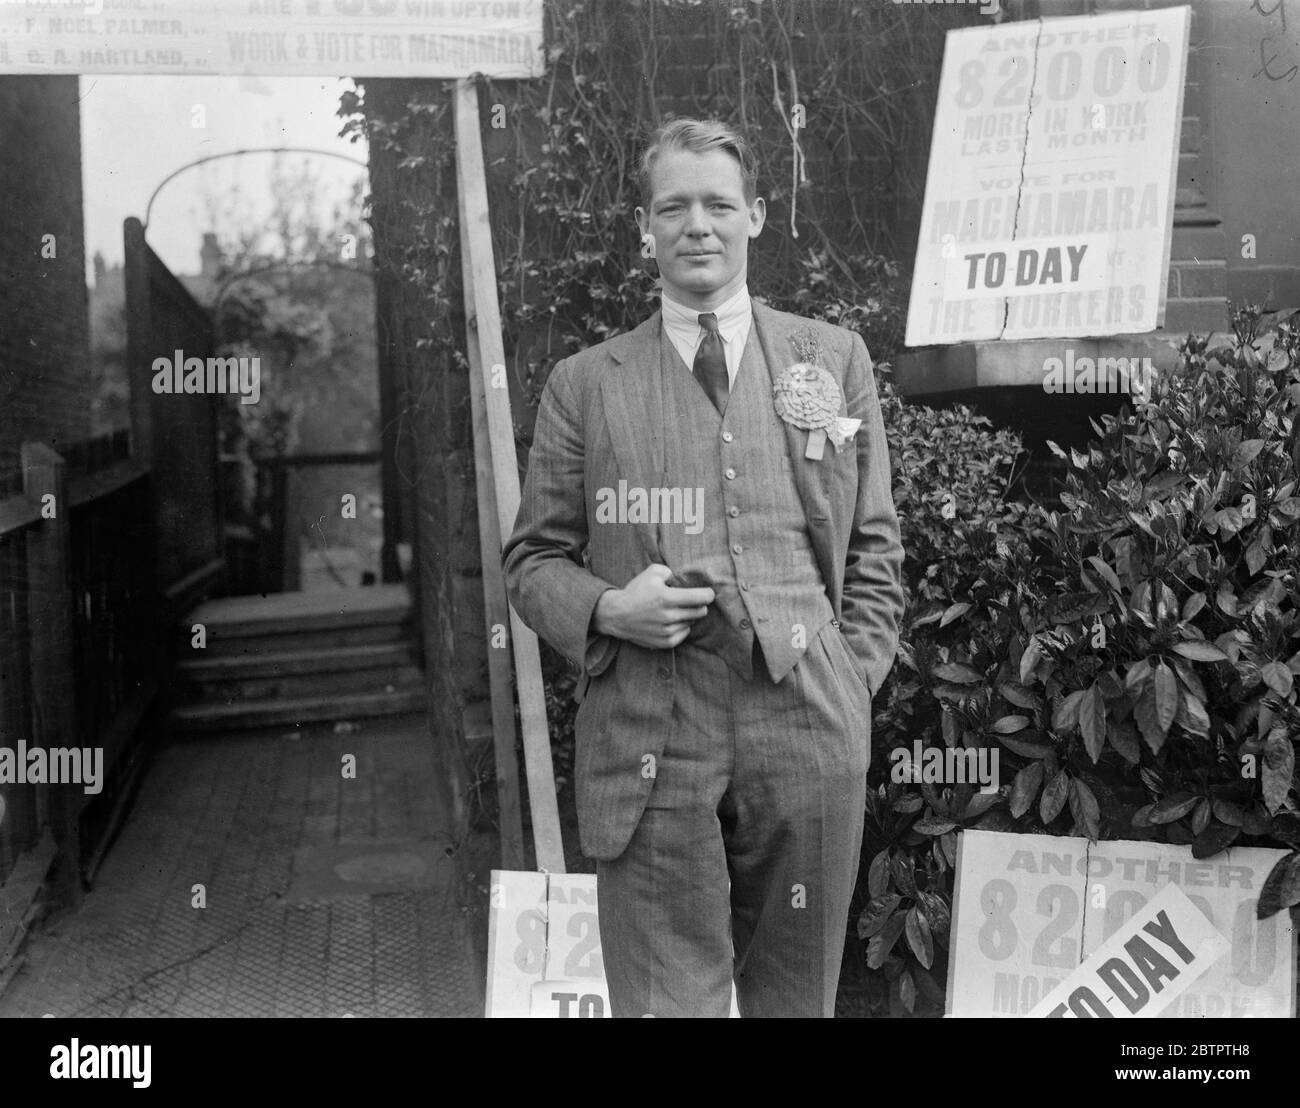 Polling su Upton . I sondaggi si sono svolte nell'Upton (West Ham) per elezione . I candidati sono i sigg. J R J Macnamara (conservatore), B Goodner (laburista ) e A F Brockway (partito laburista indipendente). Il sig. J. R. J. Macnamara, candidato conservatore, con i suoi ufficiali presso la sede di Romford Road. 14 maggio 1934 Foto Stock